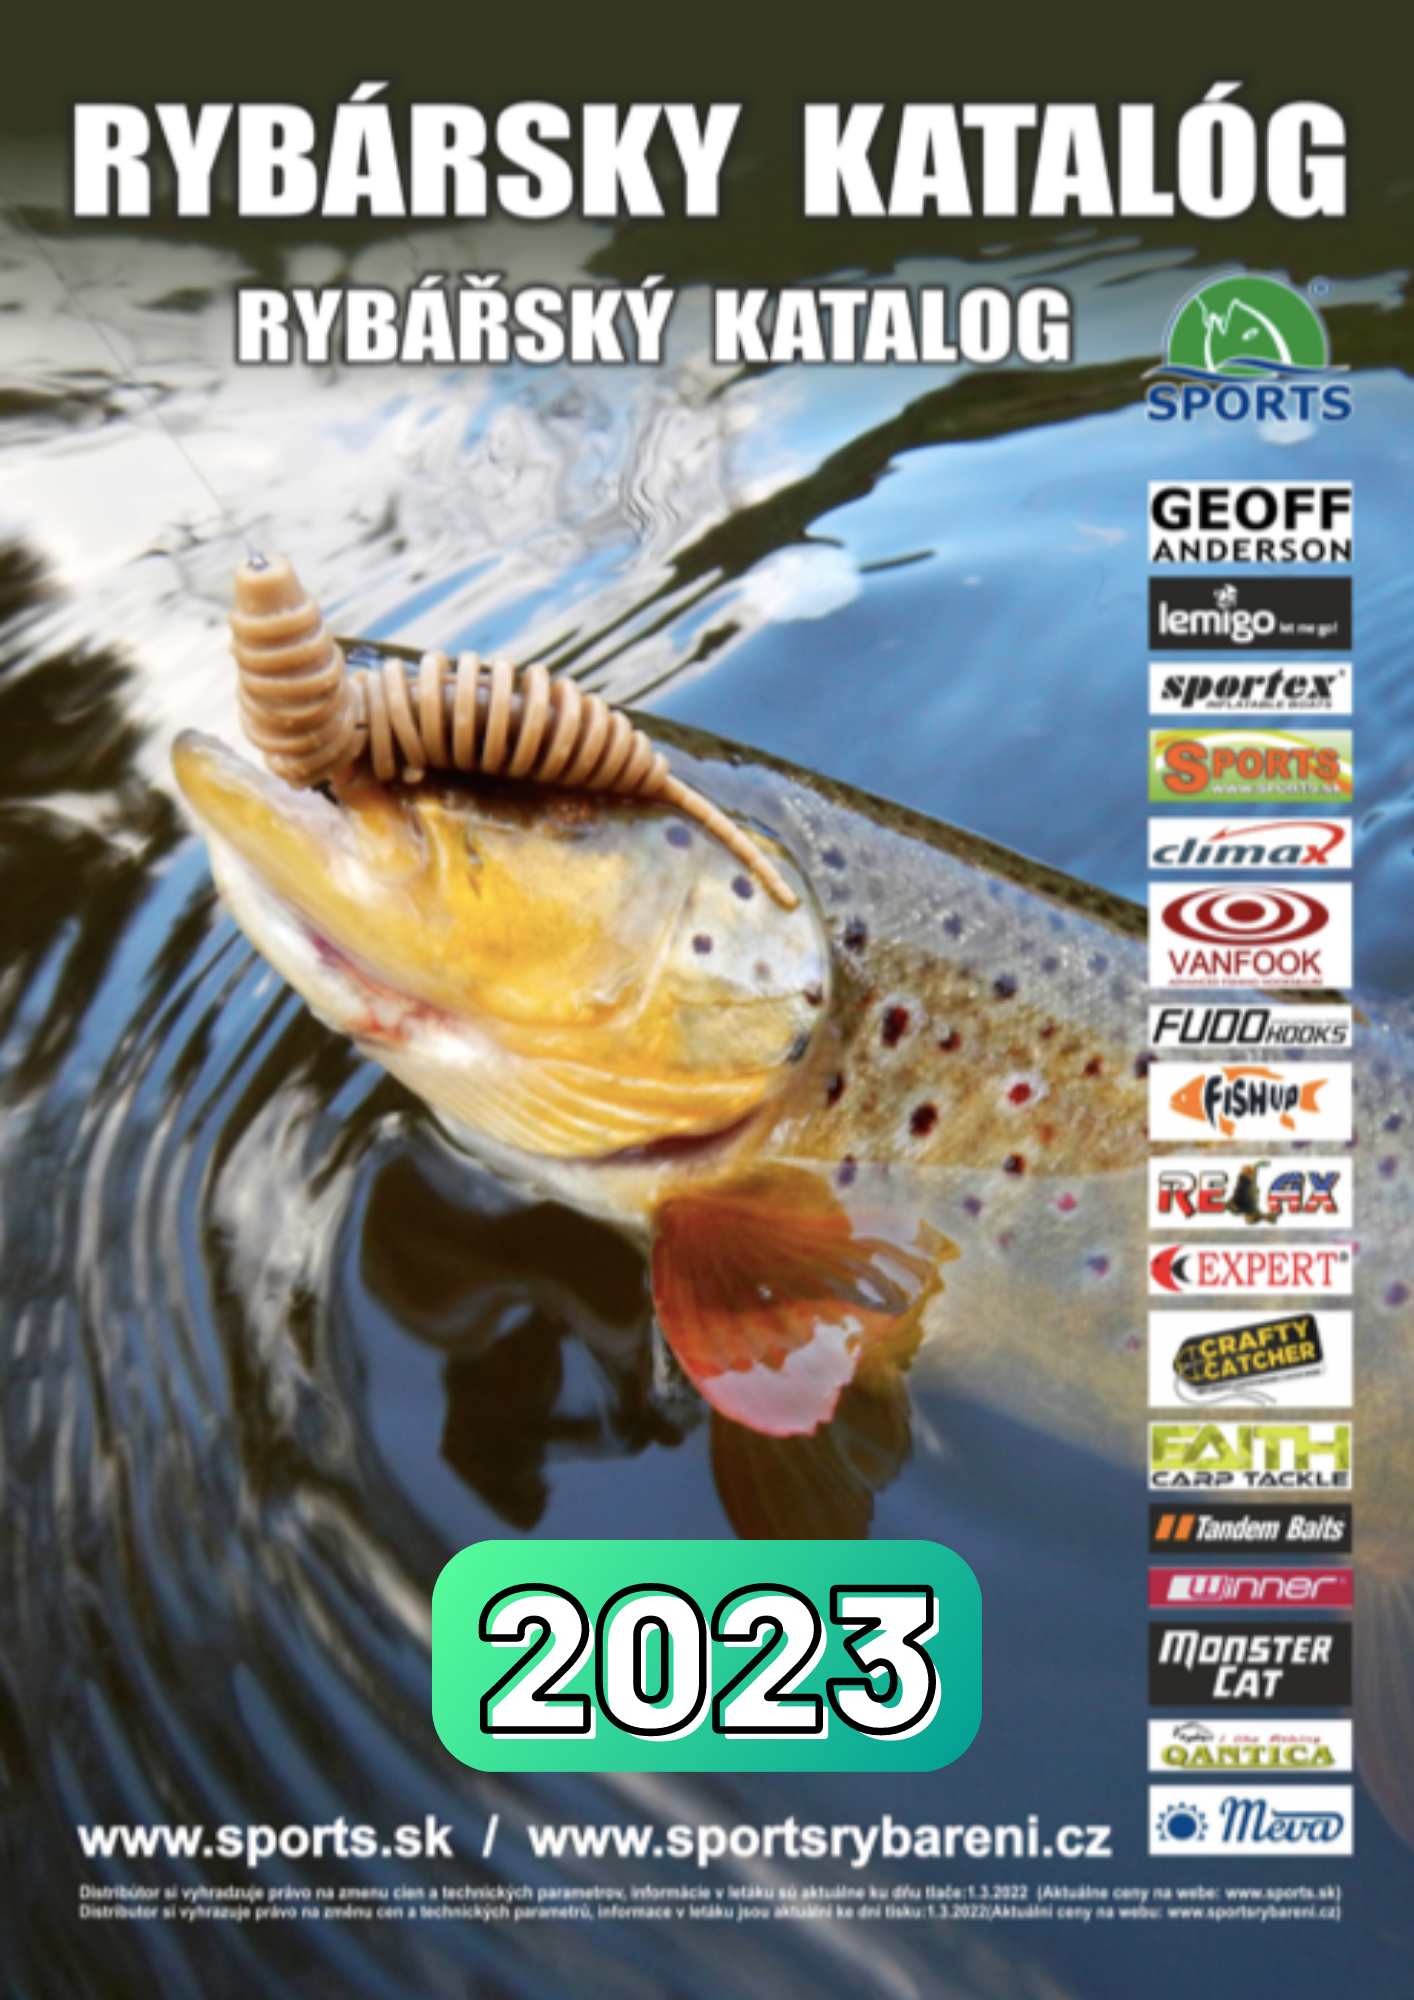 Rybársky katalóg Sports 2023